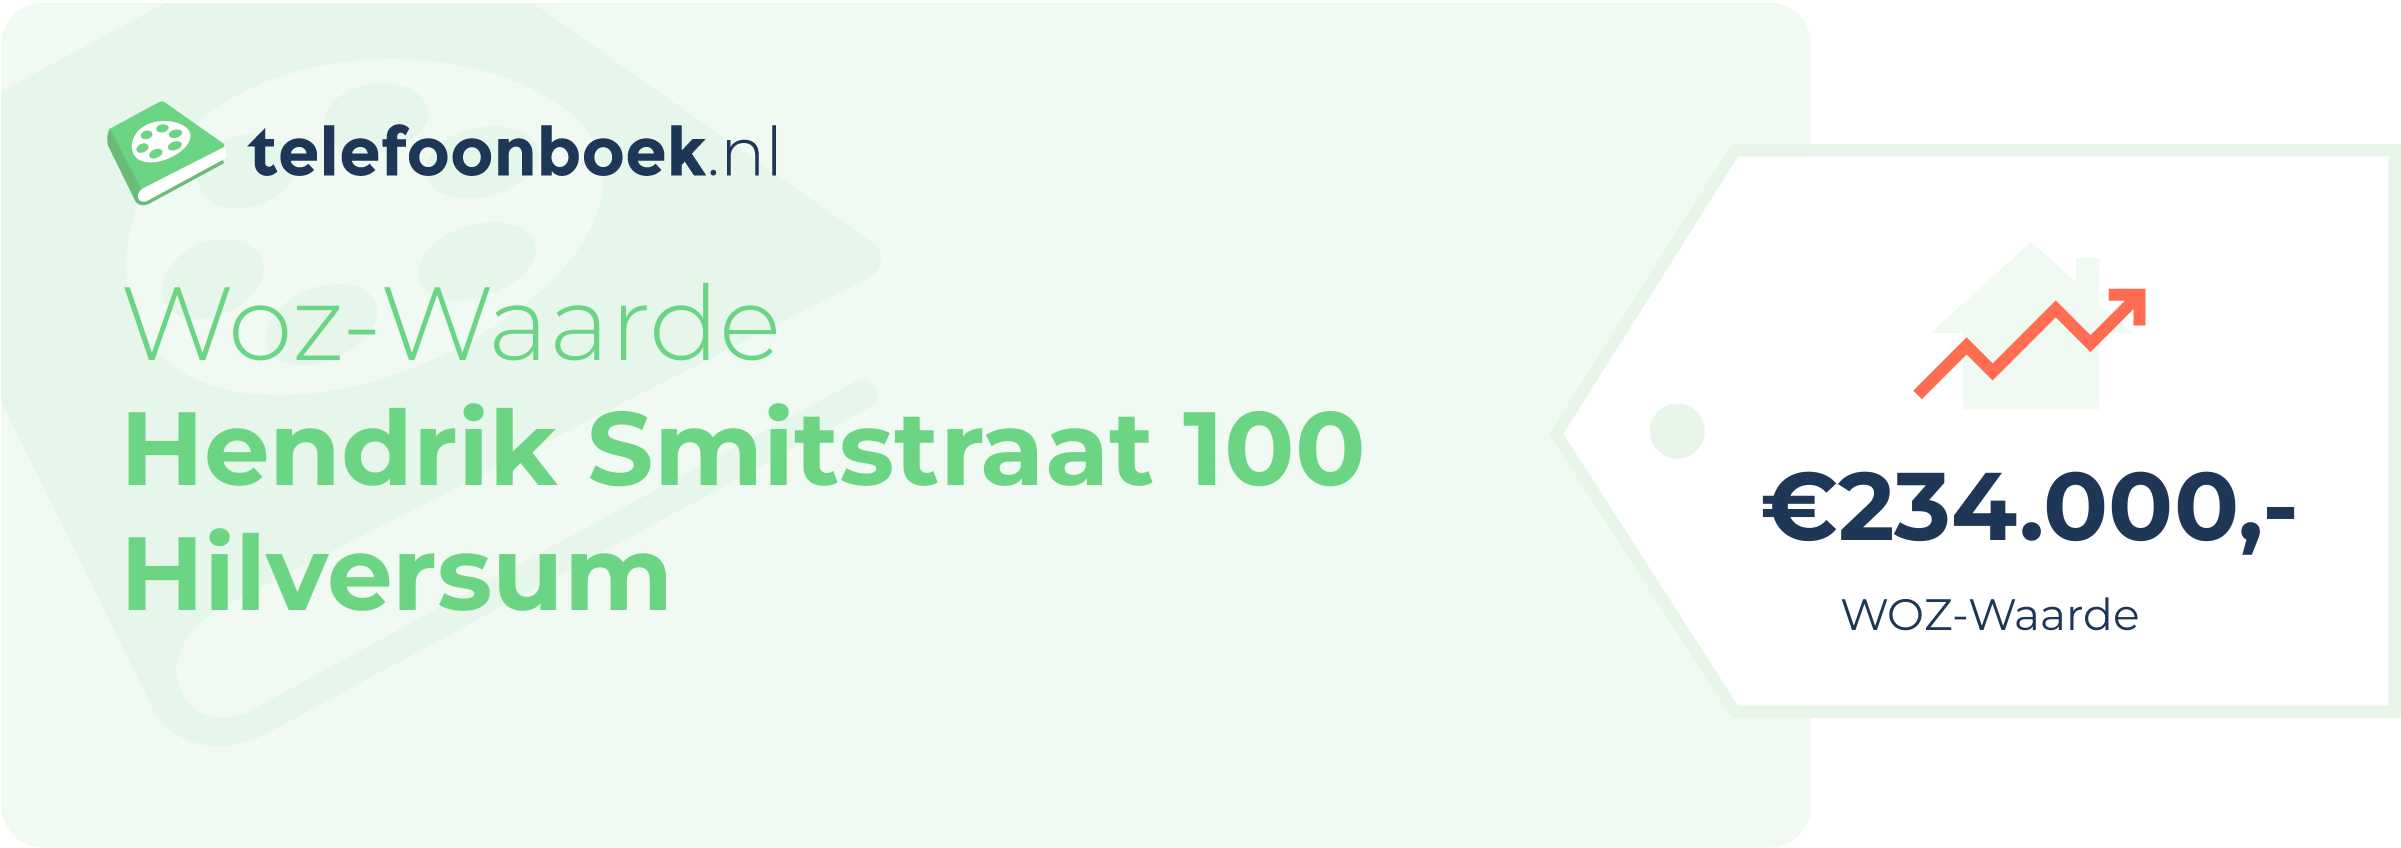 WOZ-waarde Hendrik Smitstraat 100 Hilversum